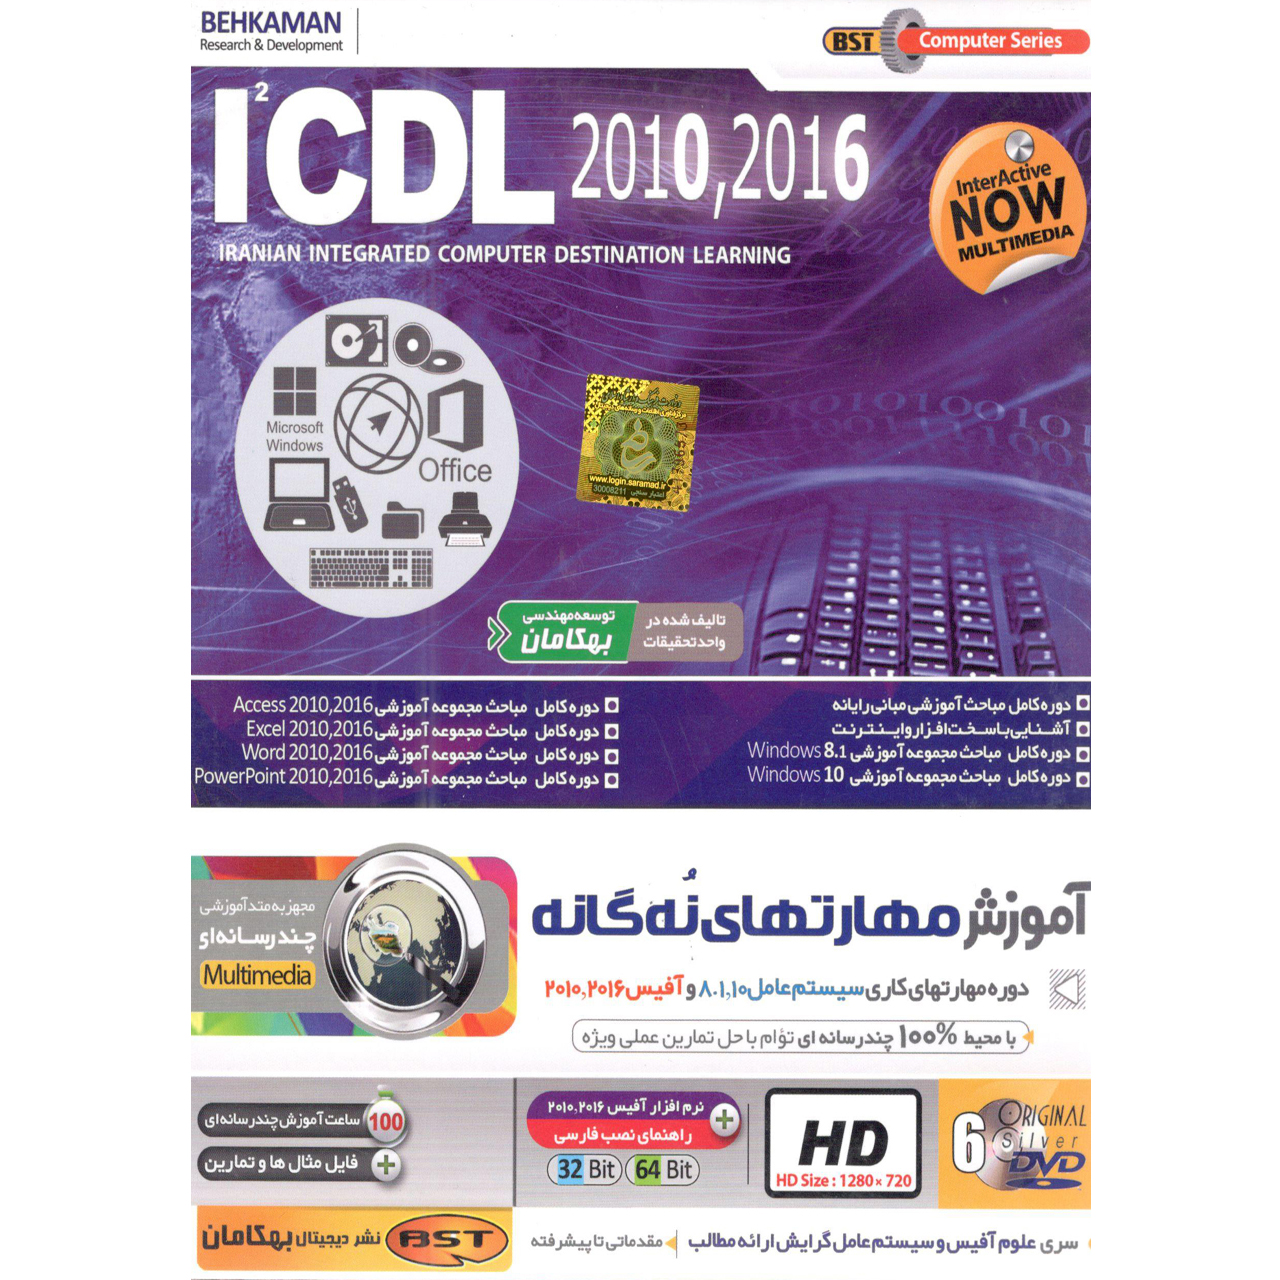 آموزش مهارتهای نه گانه 2016-2010 ICDL نشر بهکامان